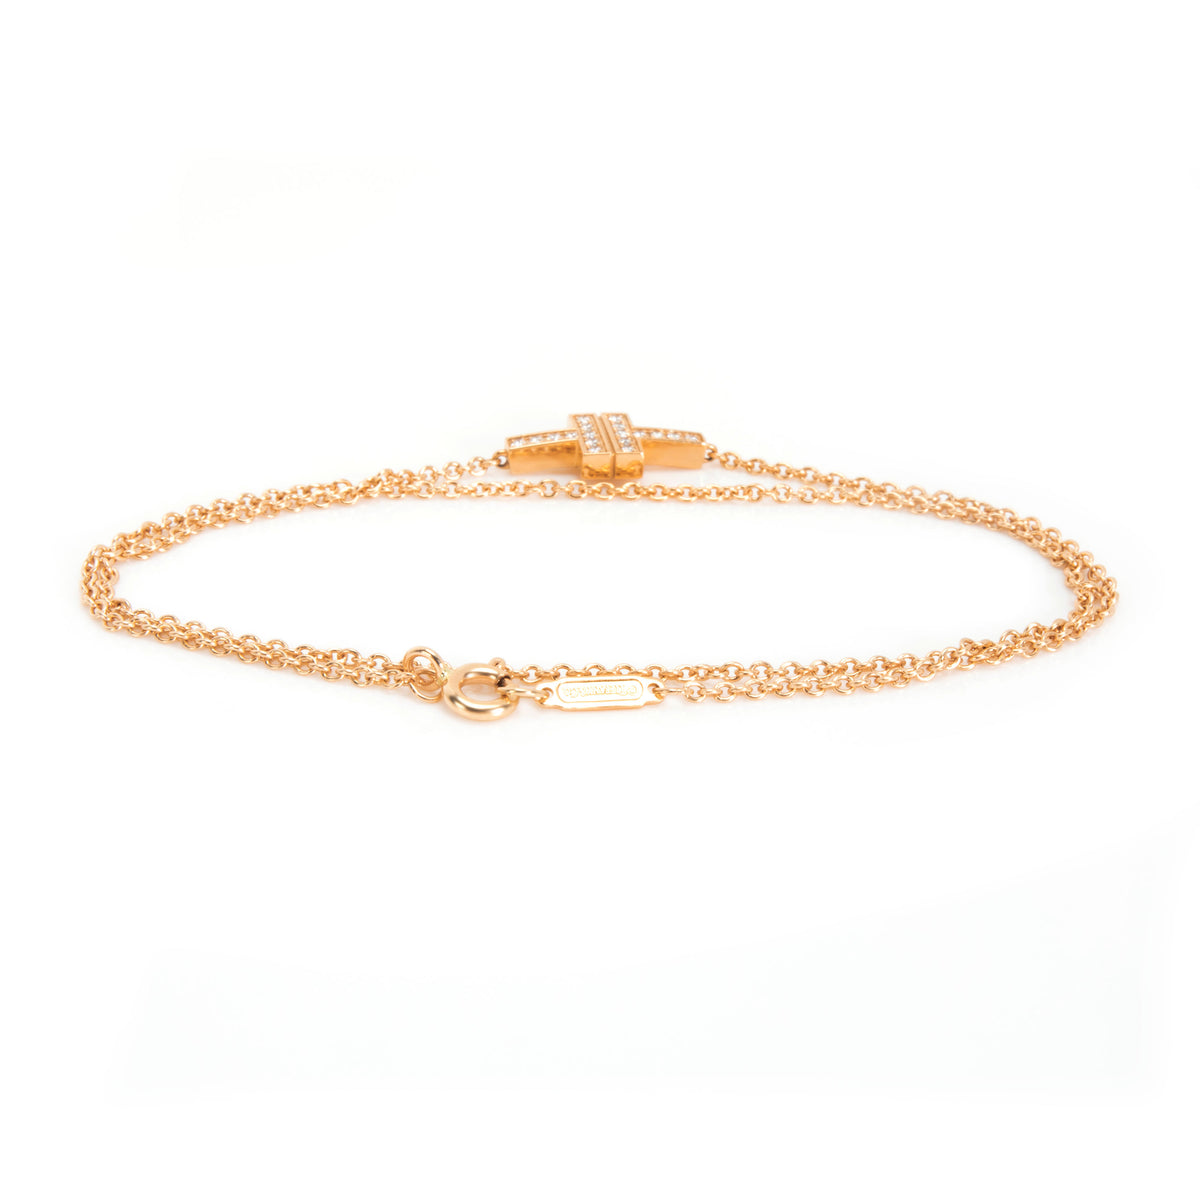 Tiffany & Co. T Two Double Chain Diamond Bracelet in 18K Rose Gold